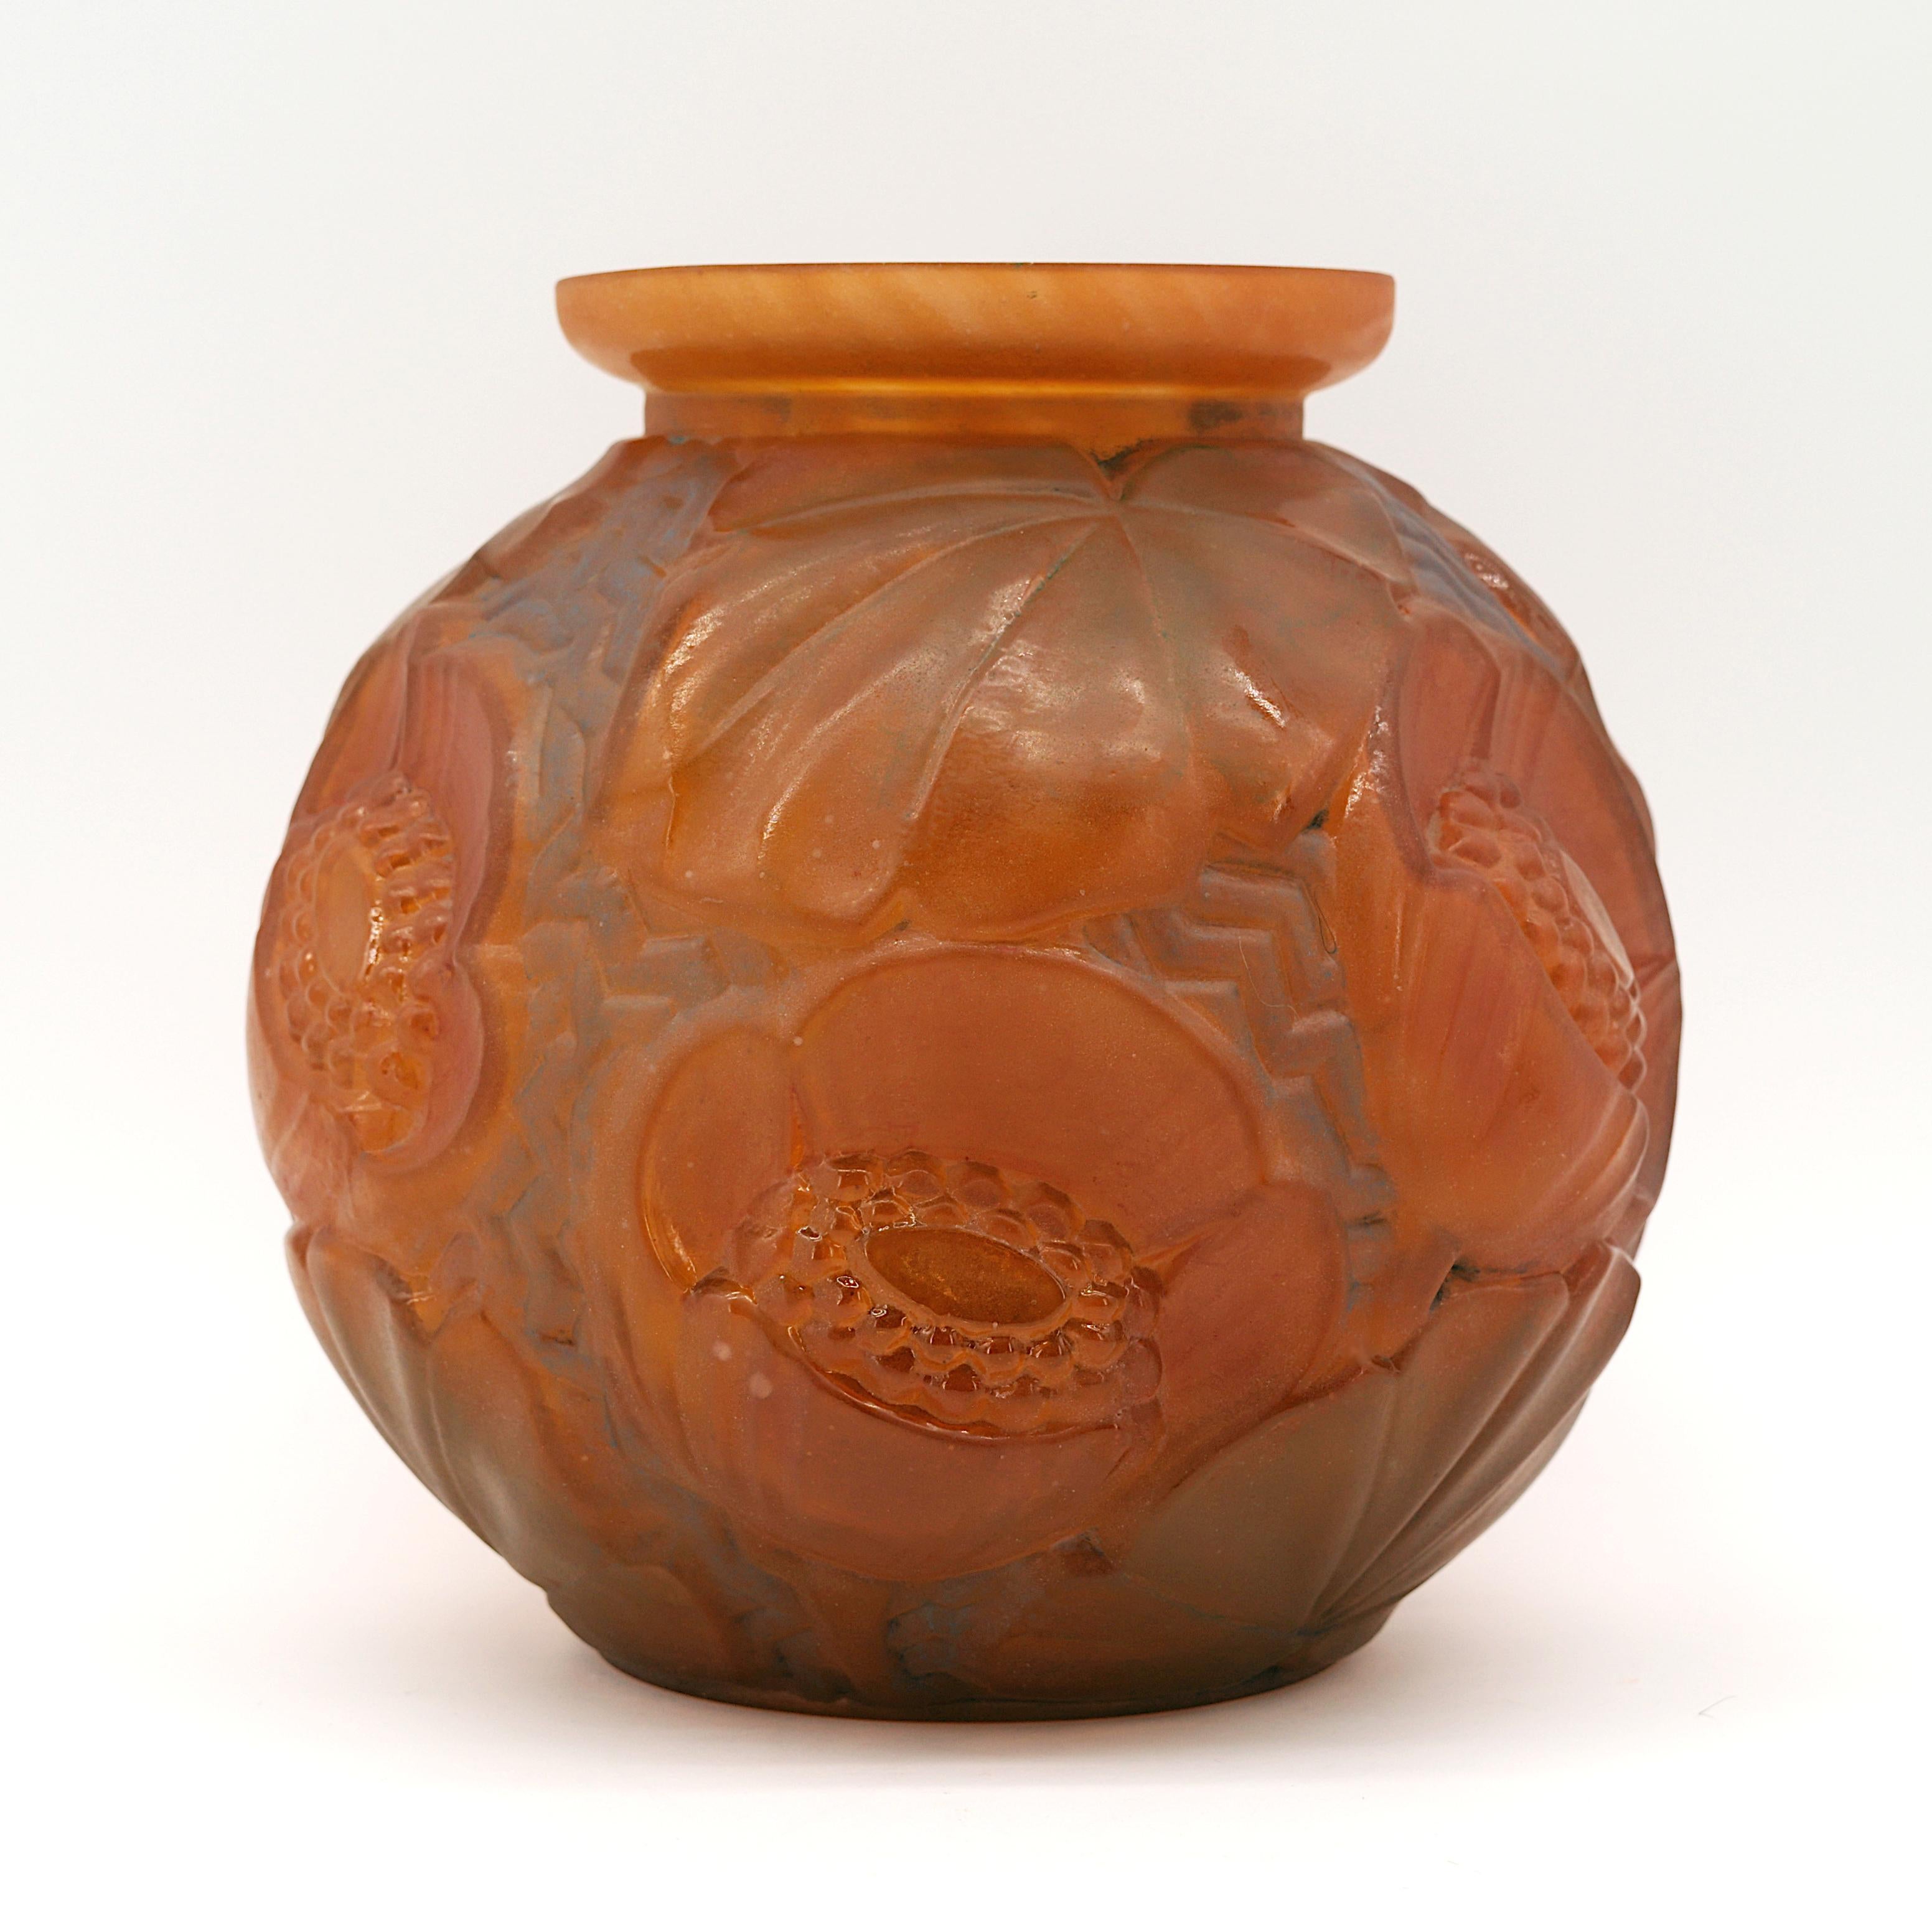 Vase en verre Art déco de Pierre D'AVESN chez Daum (Croismare, Nancy), France, début des années 1930. Motif floral. Patine étonnante. Hauteur : 19 cm, diamètre : 18 cm. Signature émaillée 